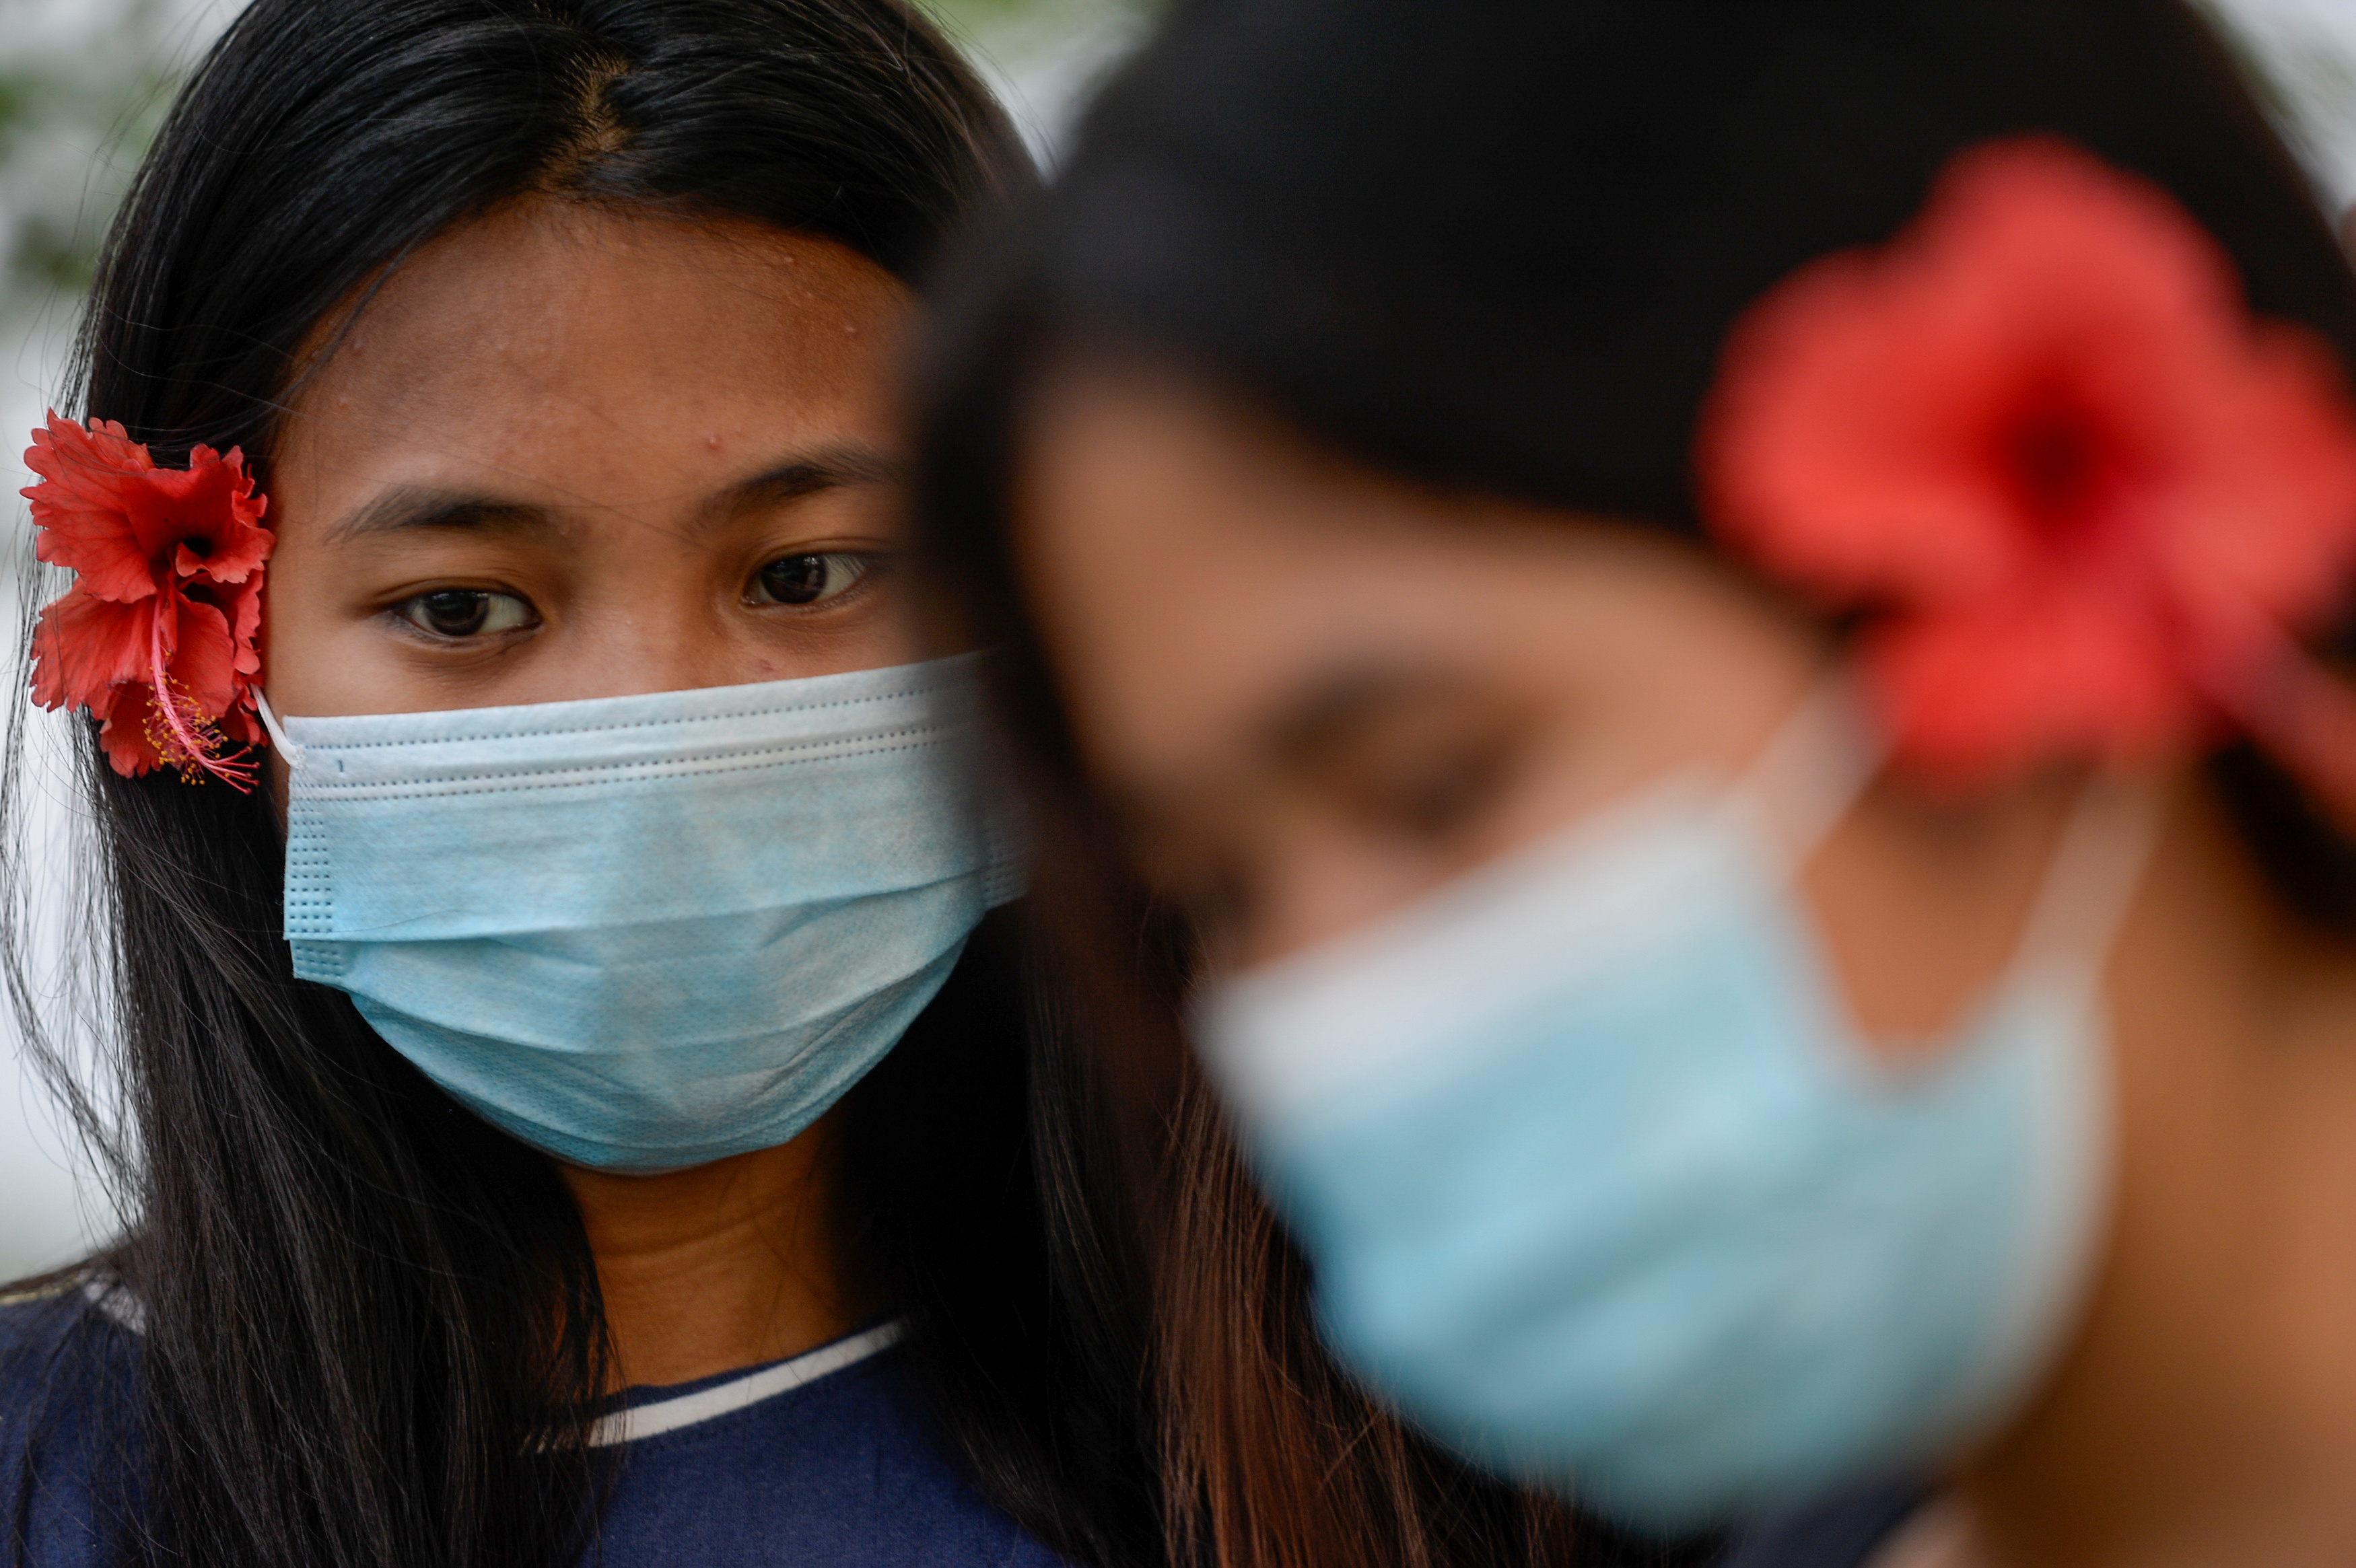 Mujeres llevan máscaras como protección contra la enfermedad del coronavirus (COVID-19) en un parque de Manila, Filipinas, 16 de diciembre de 2020. REUTERS/Lisa Marie David